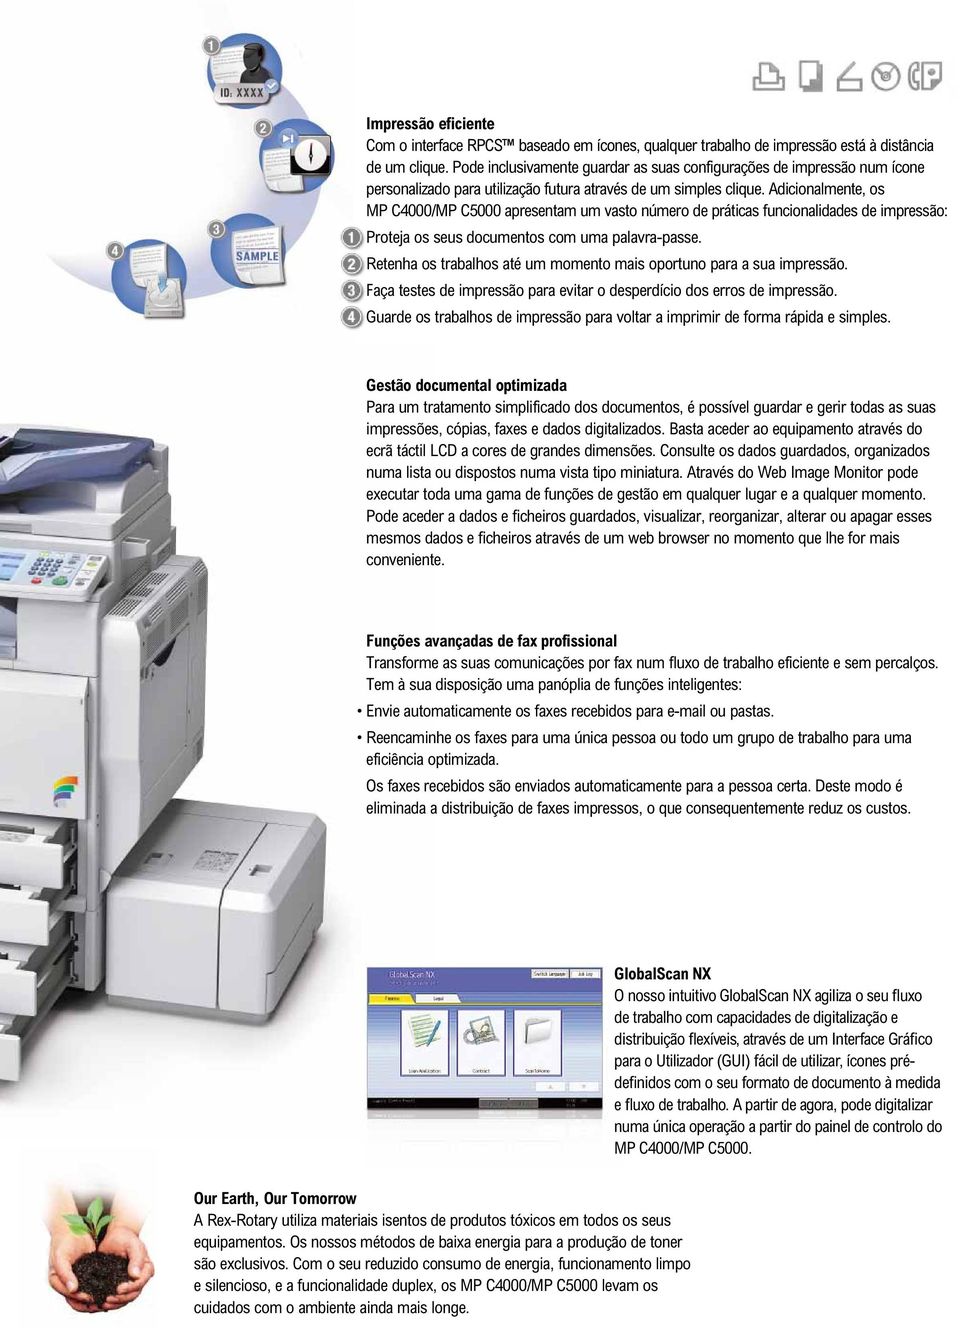 Adicionalmente, os MP C4000/MP C5000 apresentam um vasto número de práticas funcionalidades de impressão: Proteja os seus documentos com uma palavra-passe.